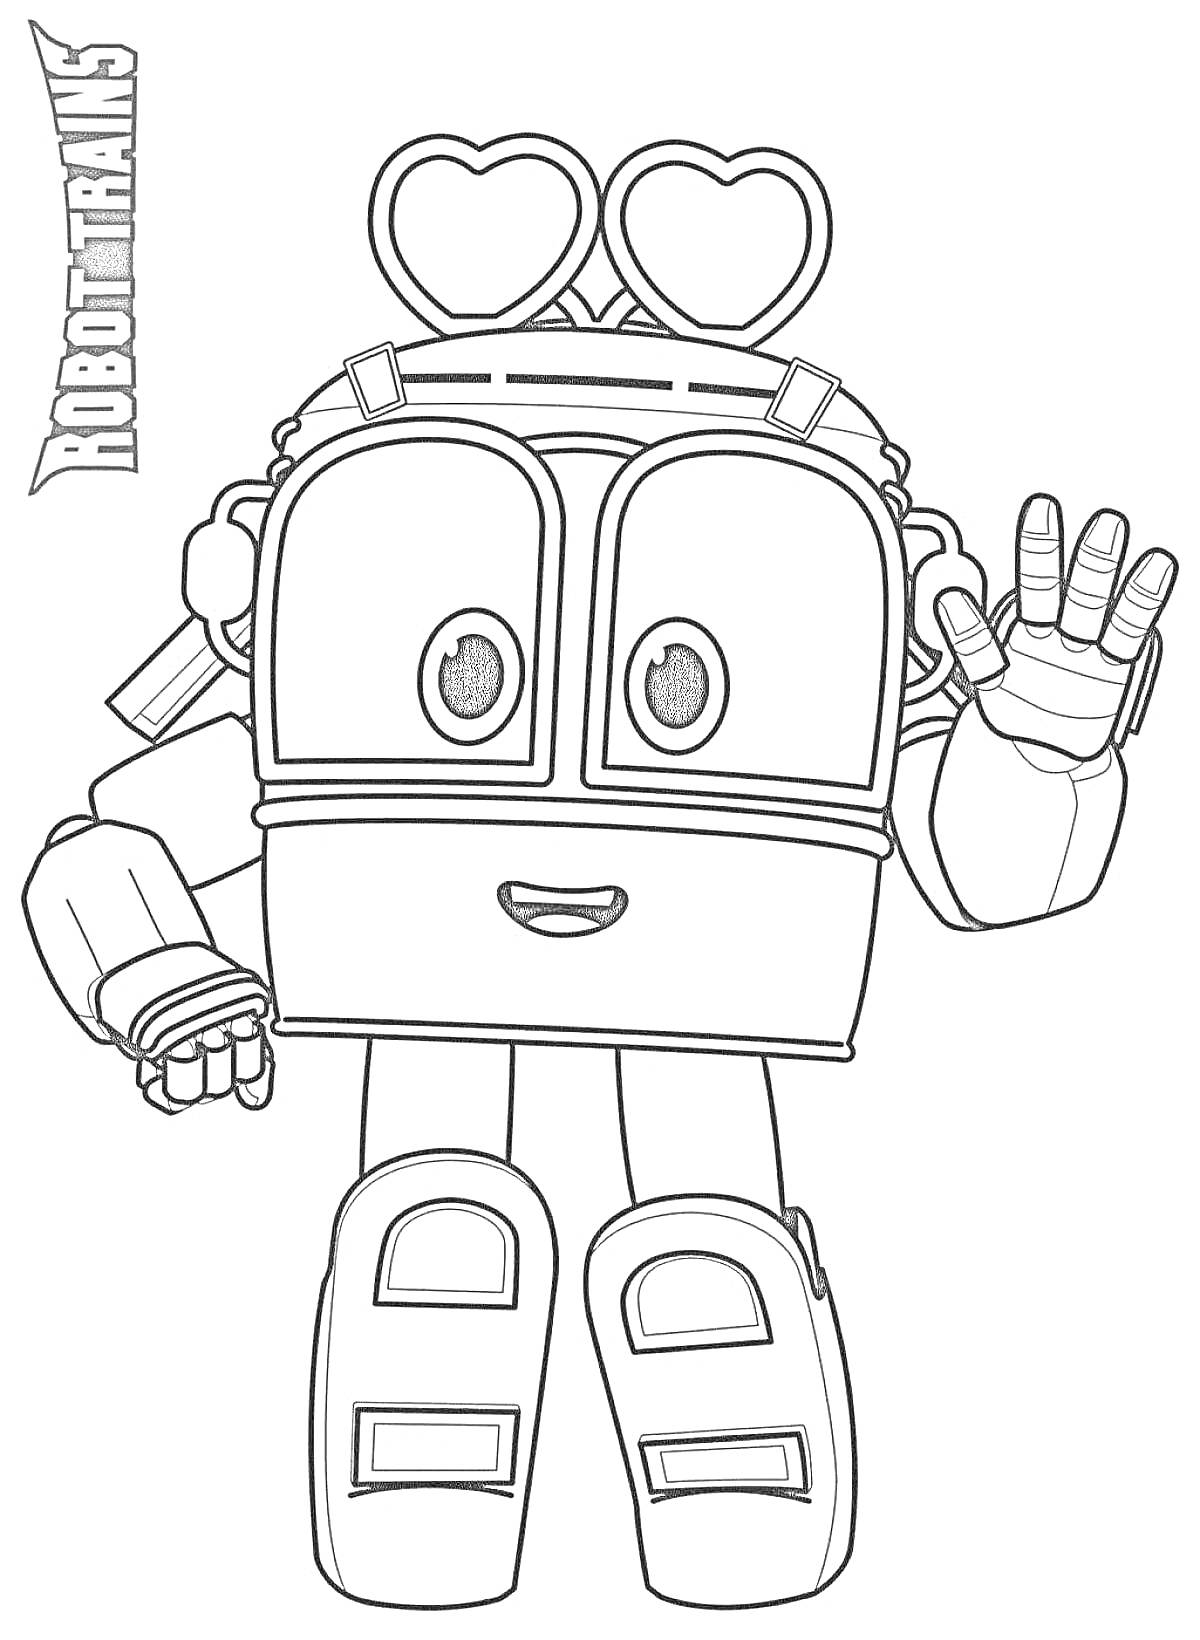 Раскраска Робот поезд Альф с поднятой рукой и сердечками на голове